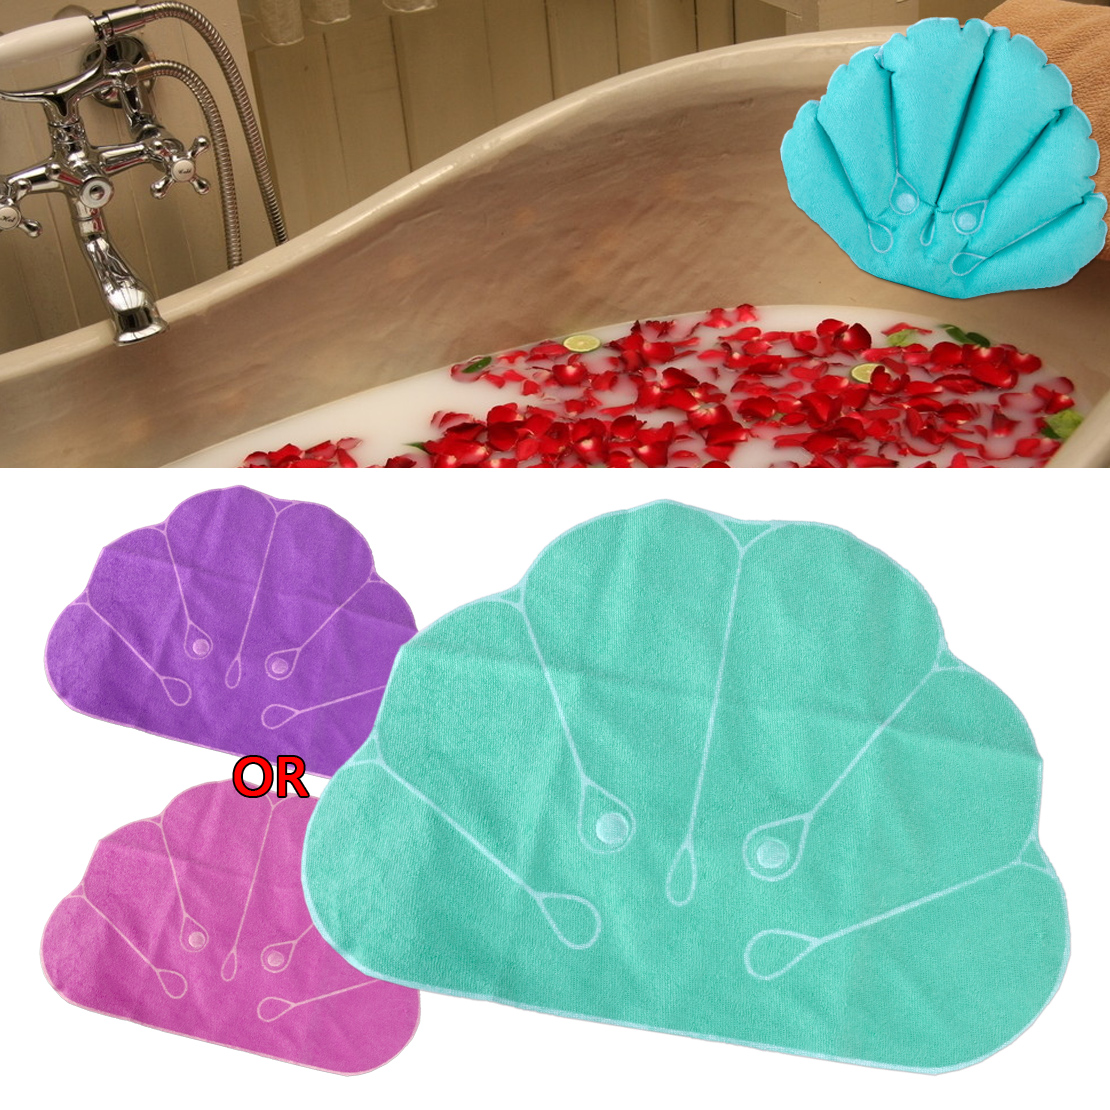 Aufblasbar Bade Kissen mit Saugnpfe Bade Nacken Comfort Kissen Schale Farbe kk